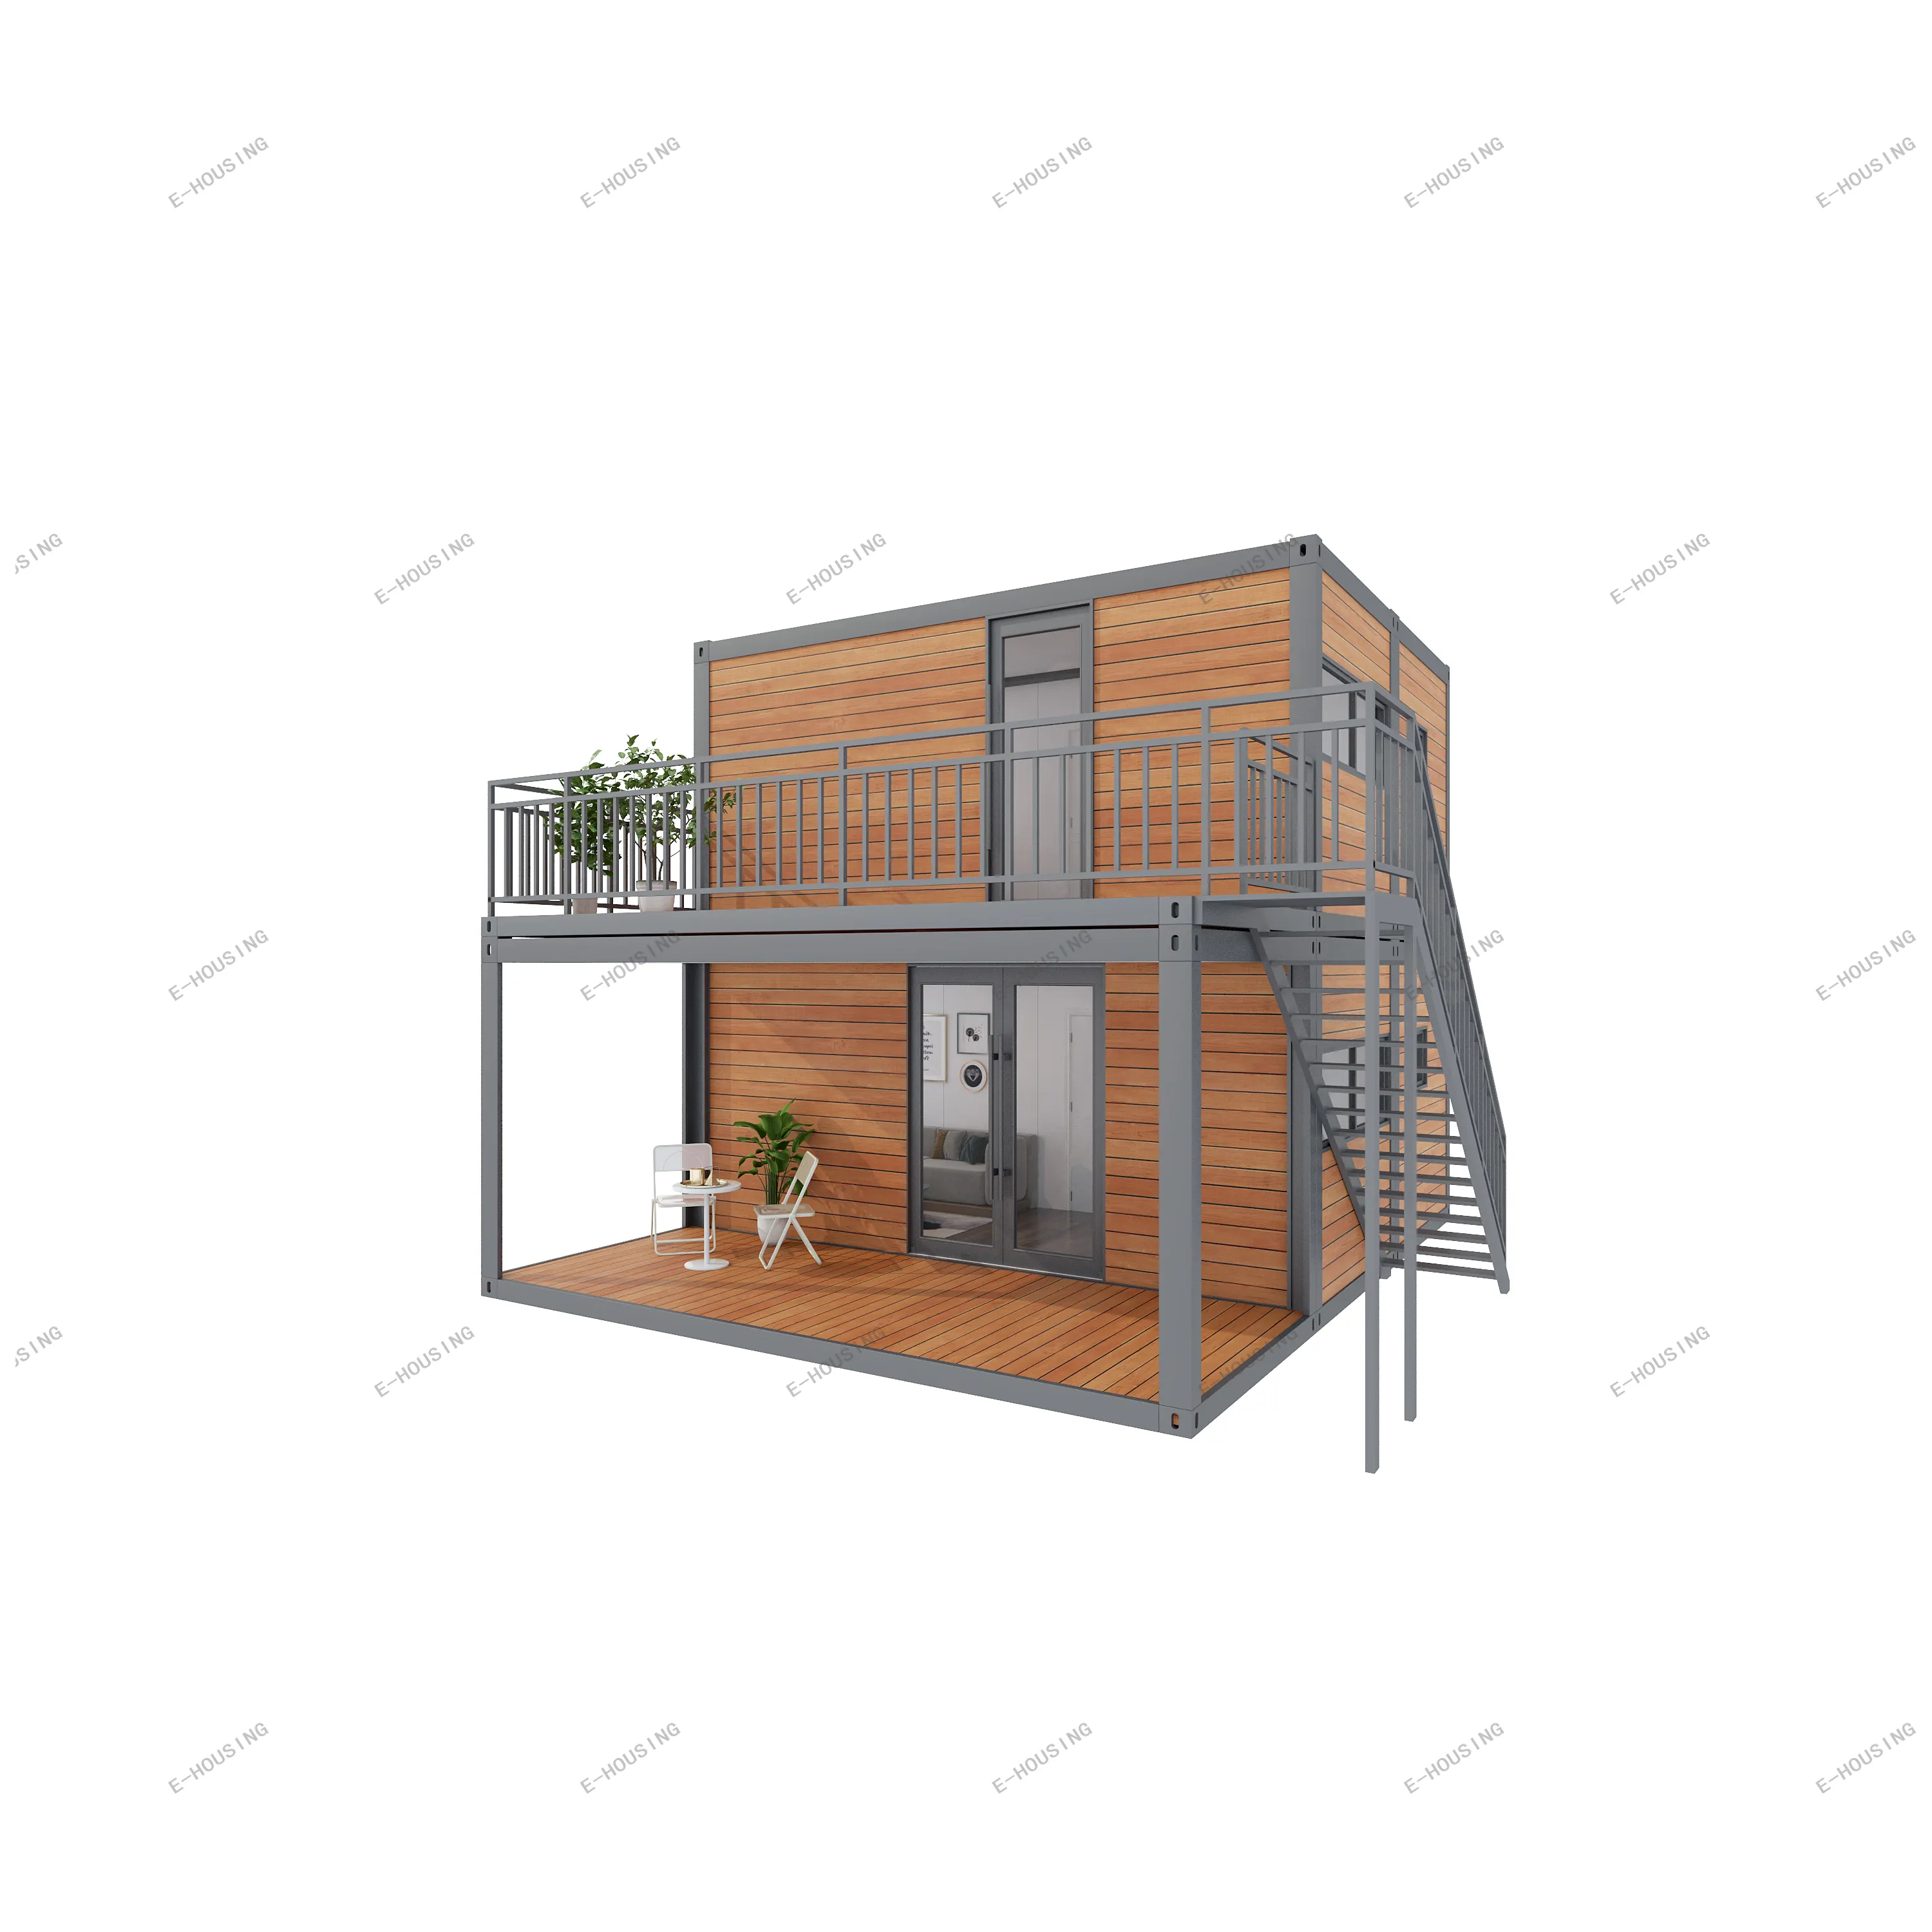 가나 Foldout 홈 20 피트 컨테이너 하우스 판매 층 조립식 확장 가능한 수영장 크로아티아 상점 태양 보트 휴대용 생활